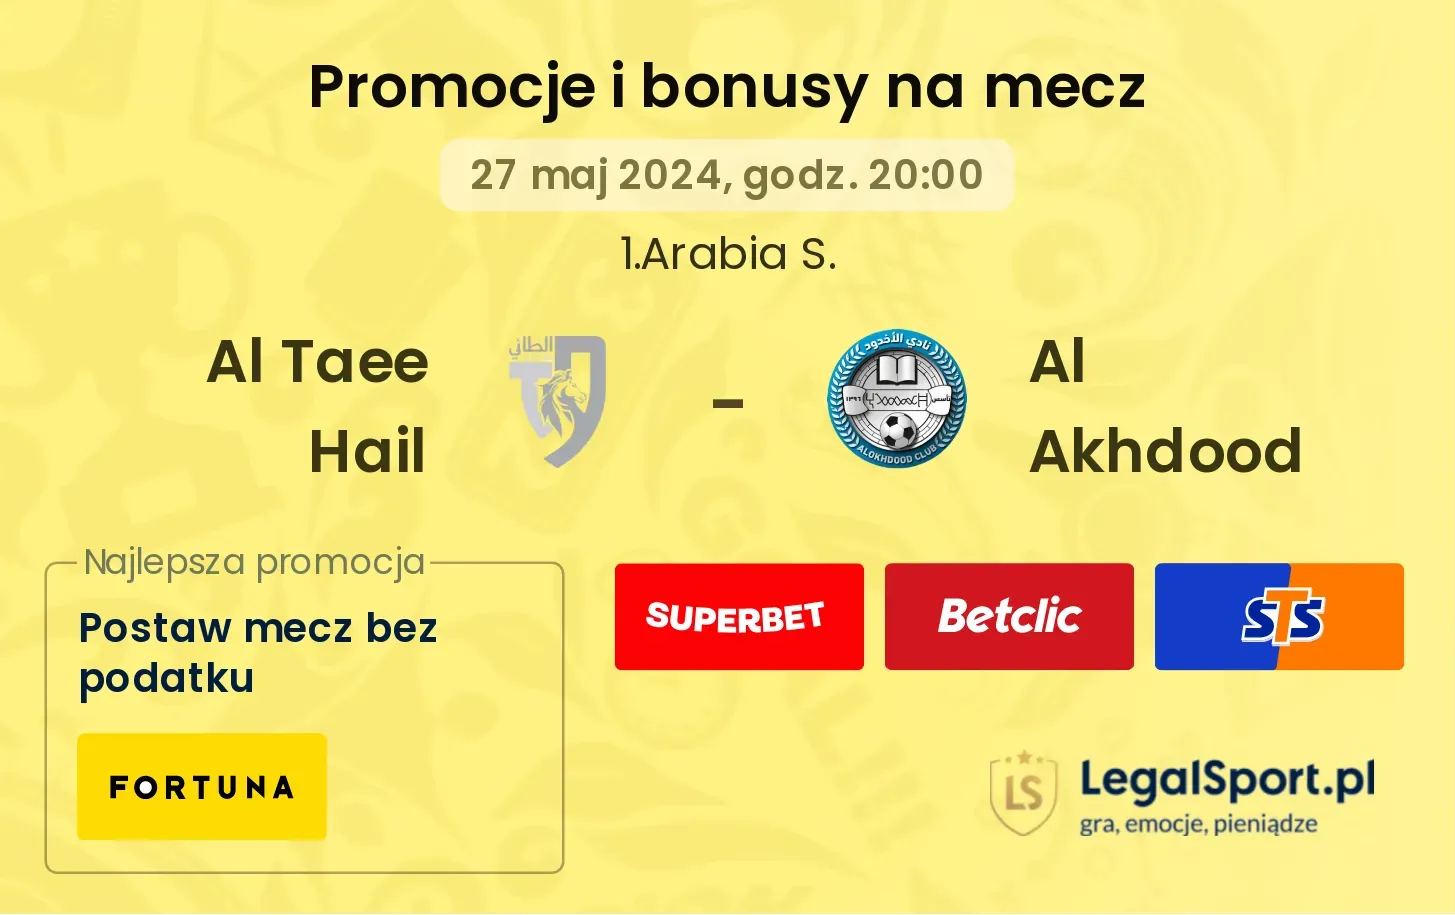 Al Taee Hail - Al Akhdood promocje bonusy na mecz